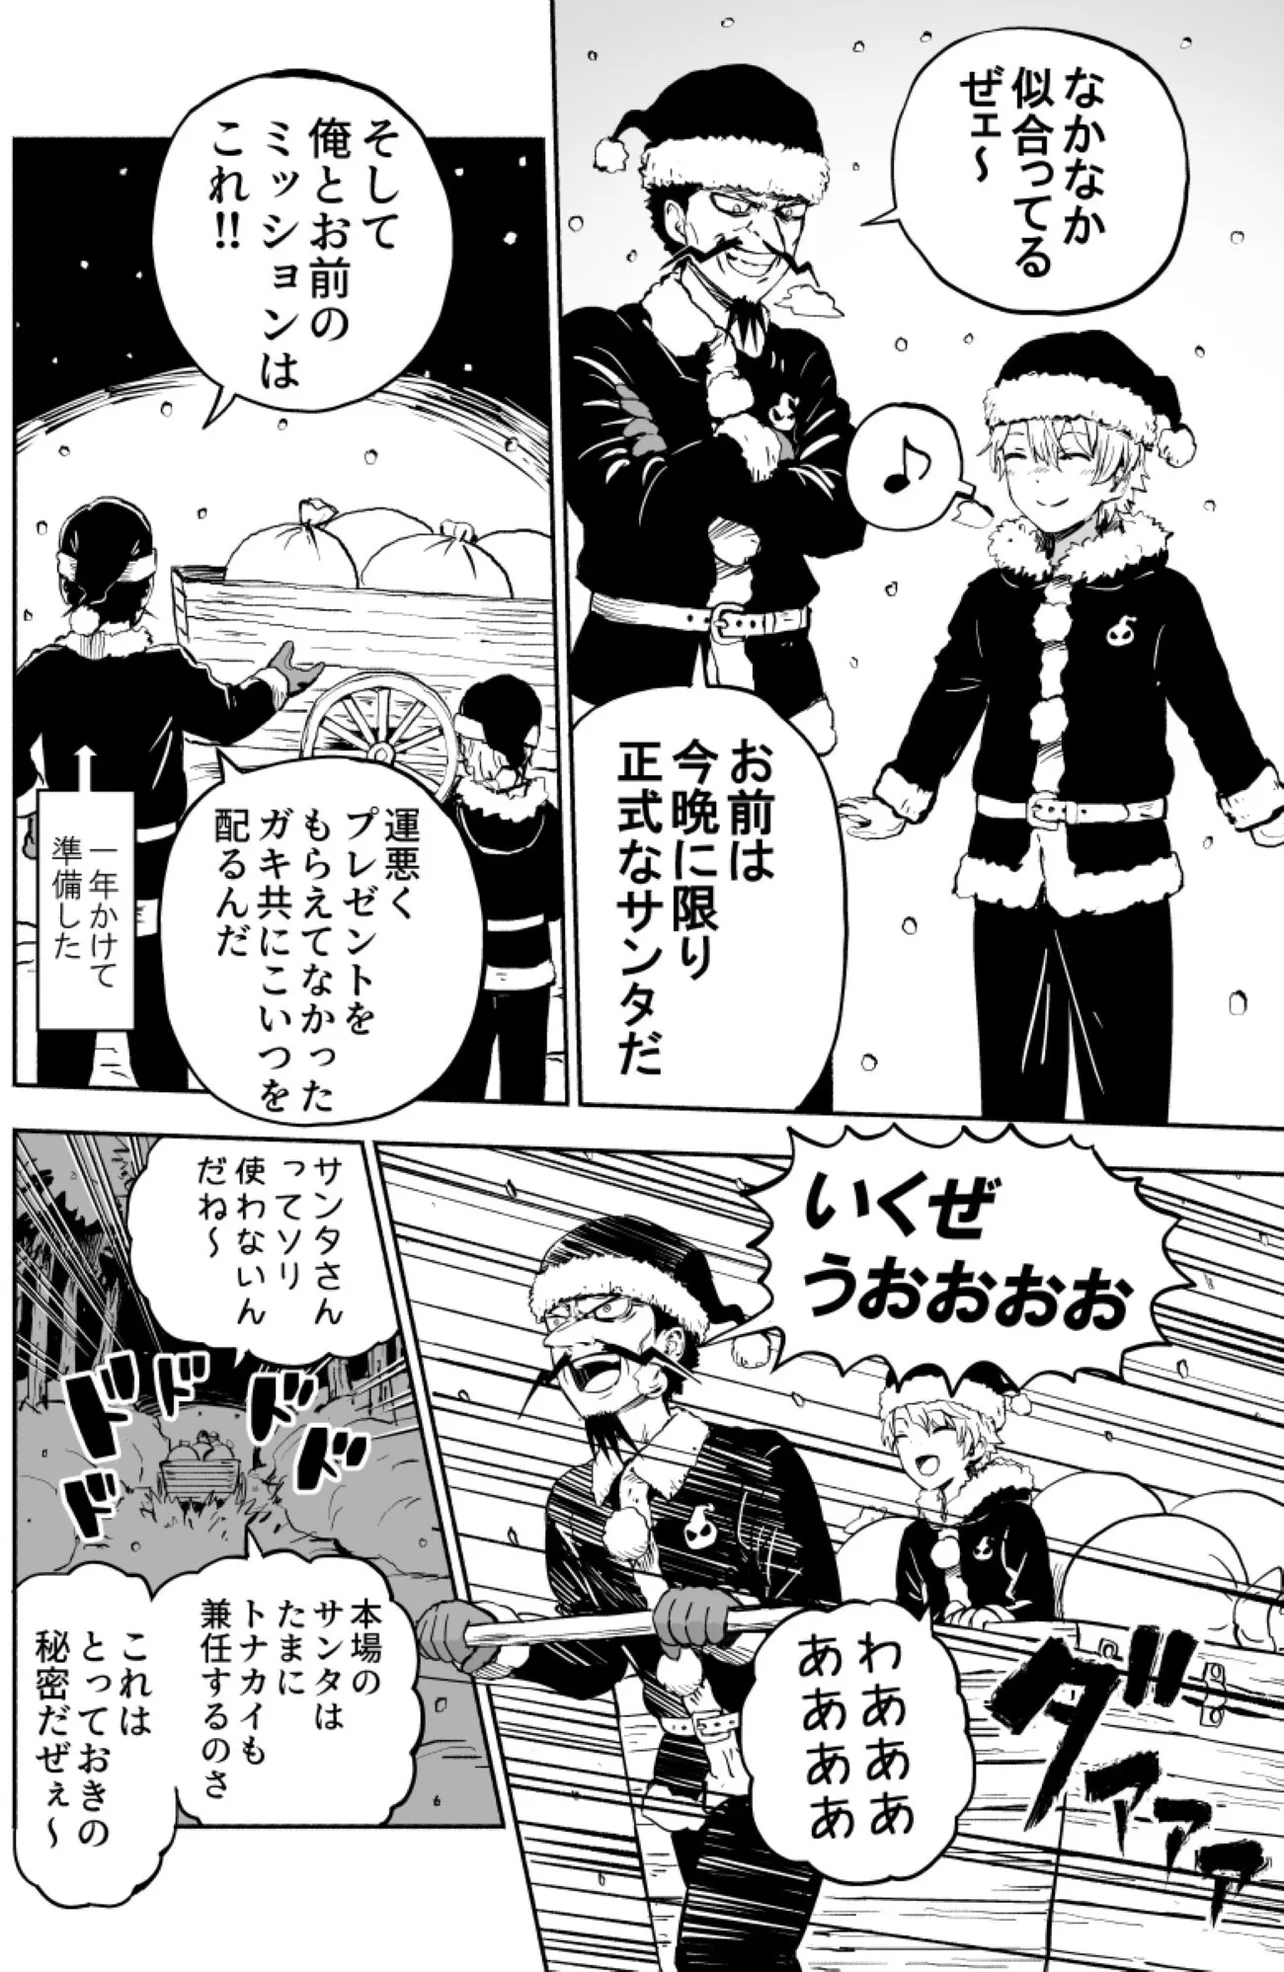 『ブラックサンタのクリスマス』(11／24)